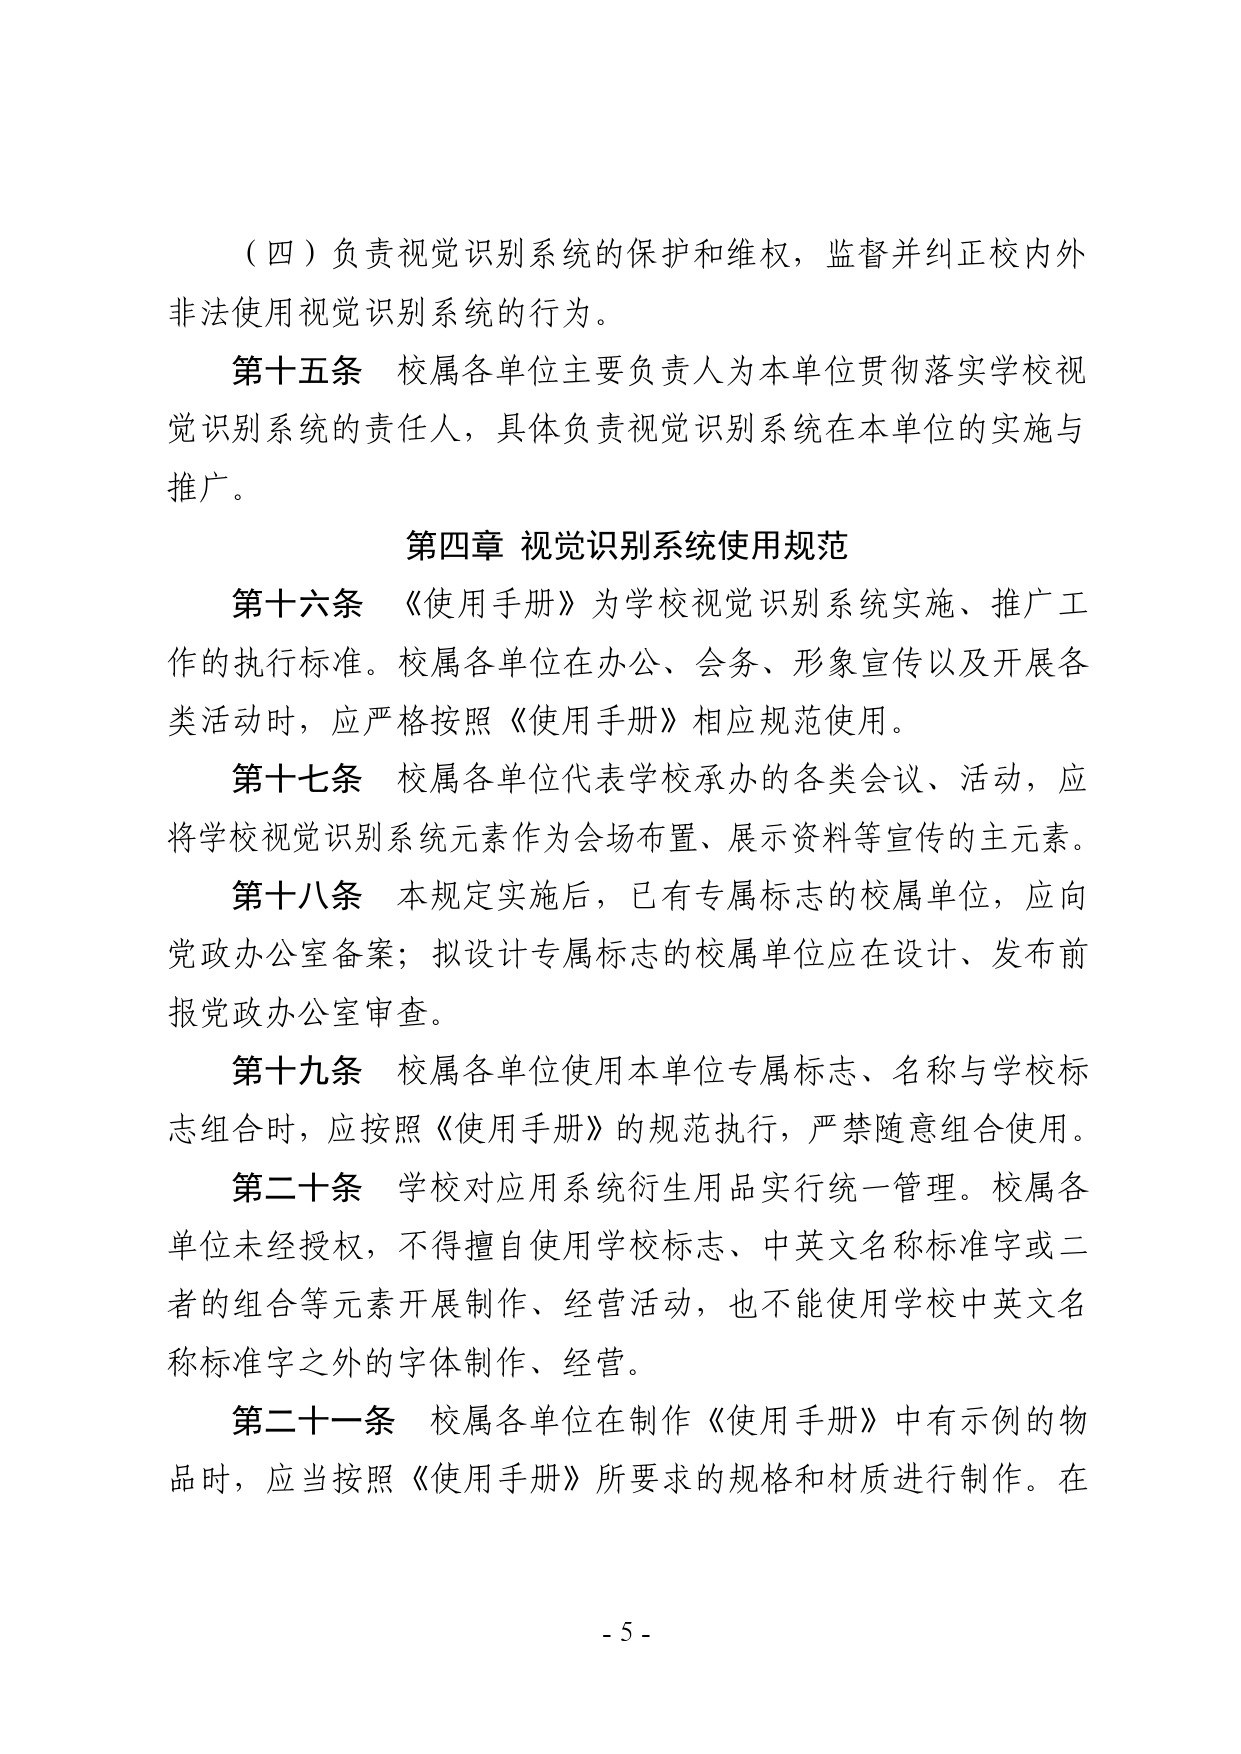 关于印发《湖南农业大学视觉识别系统管理办法（暂行）》的通知-正文_page-0005